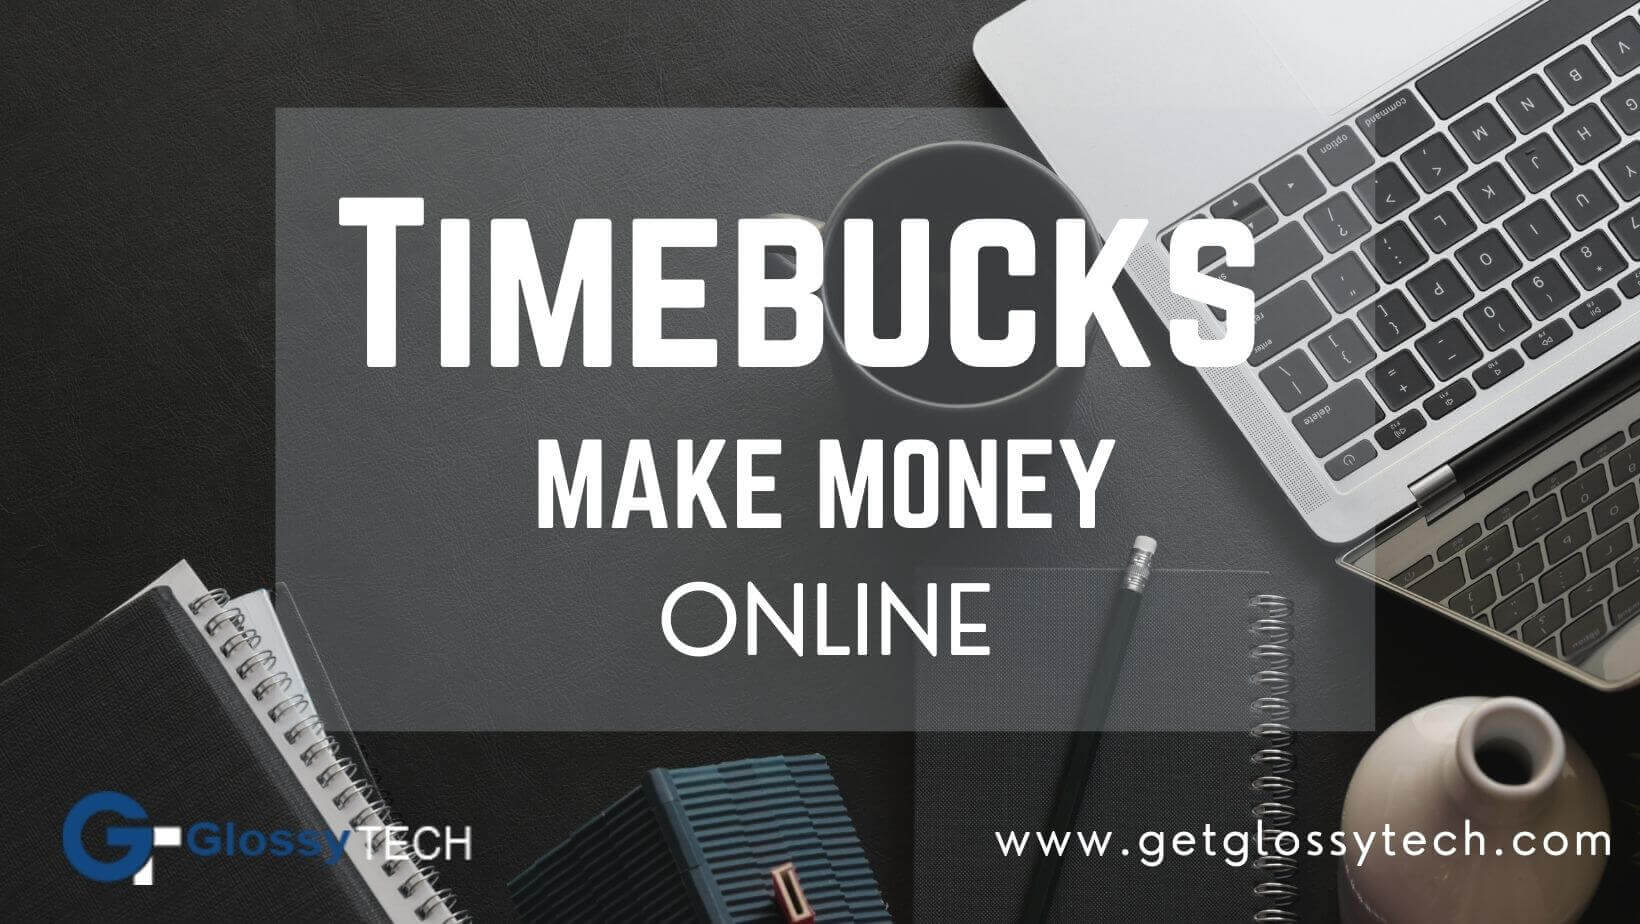 TimeBucks online earning jobs